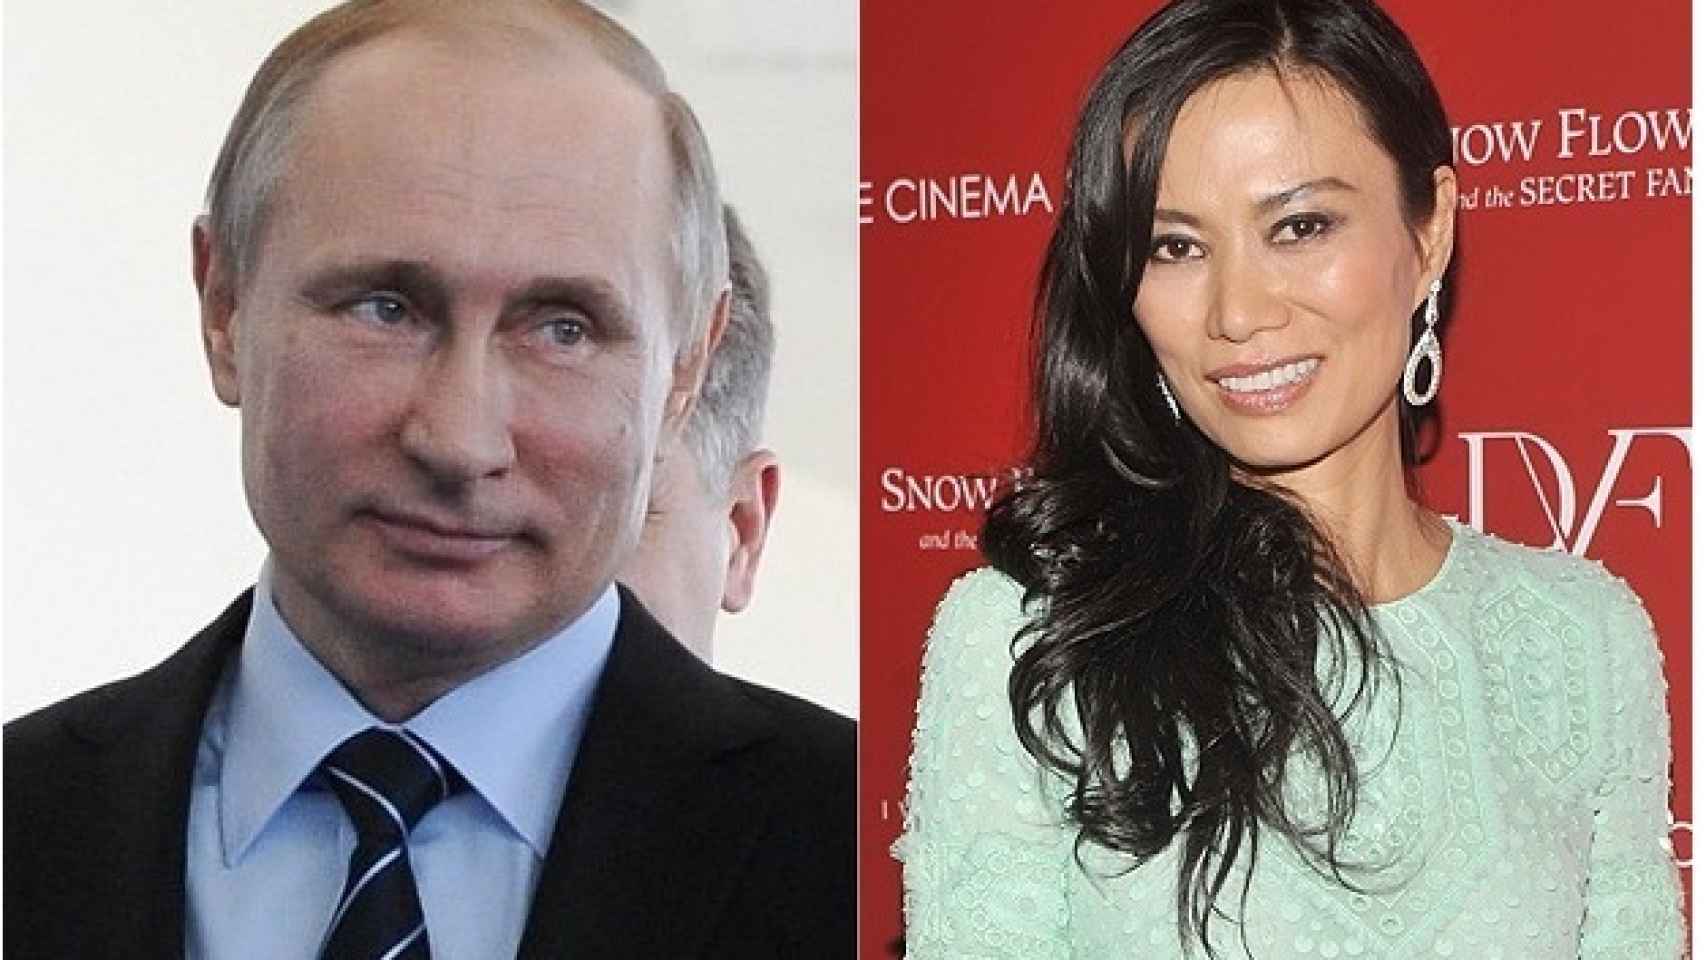 Wendi-Deng-Vladimir-Putin-juntos_114500208_3265128_1706x960.jpg